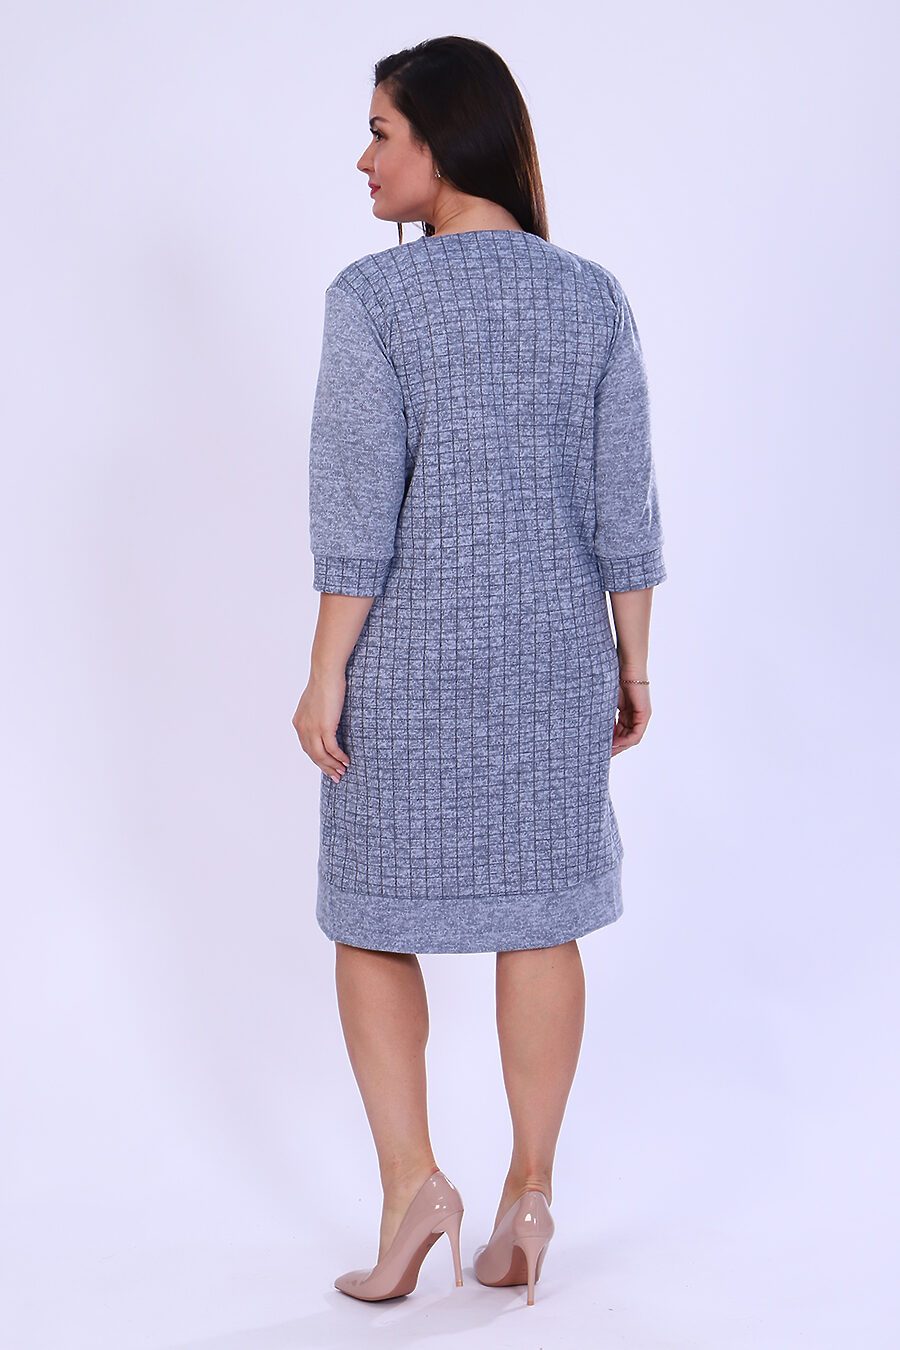 Платье Березка для женщин НАТАЛИ 808064 купить оптом от производителя. Совместная покупка женской одежды в OptMoyo